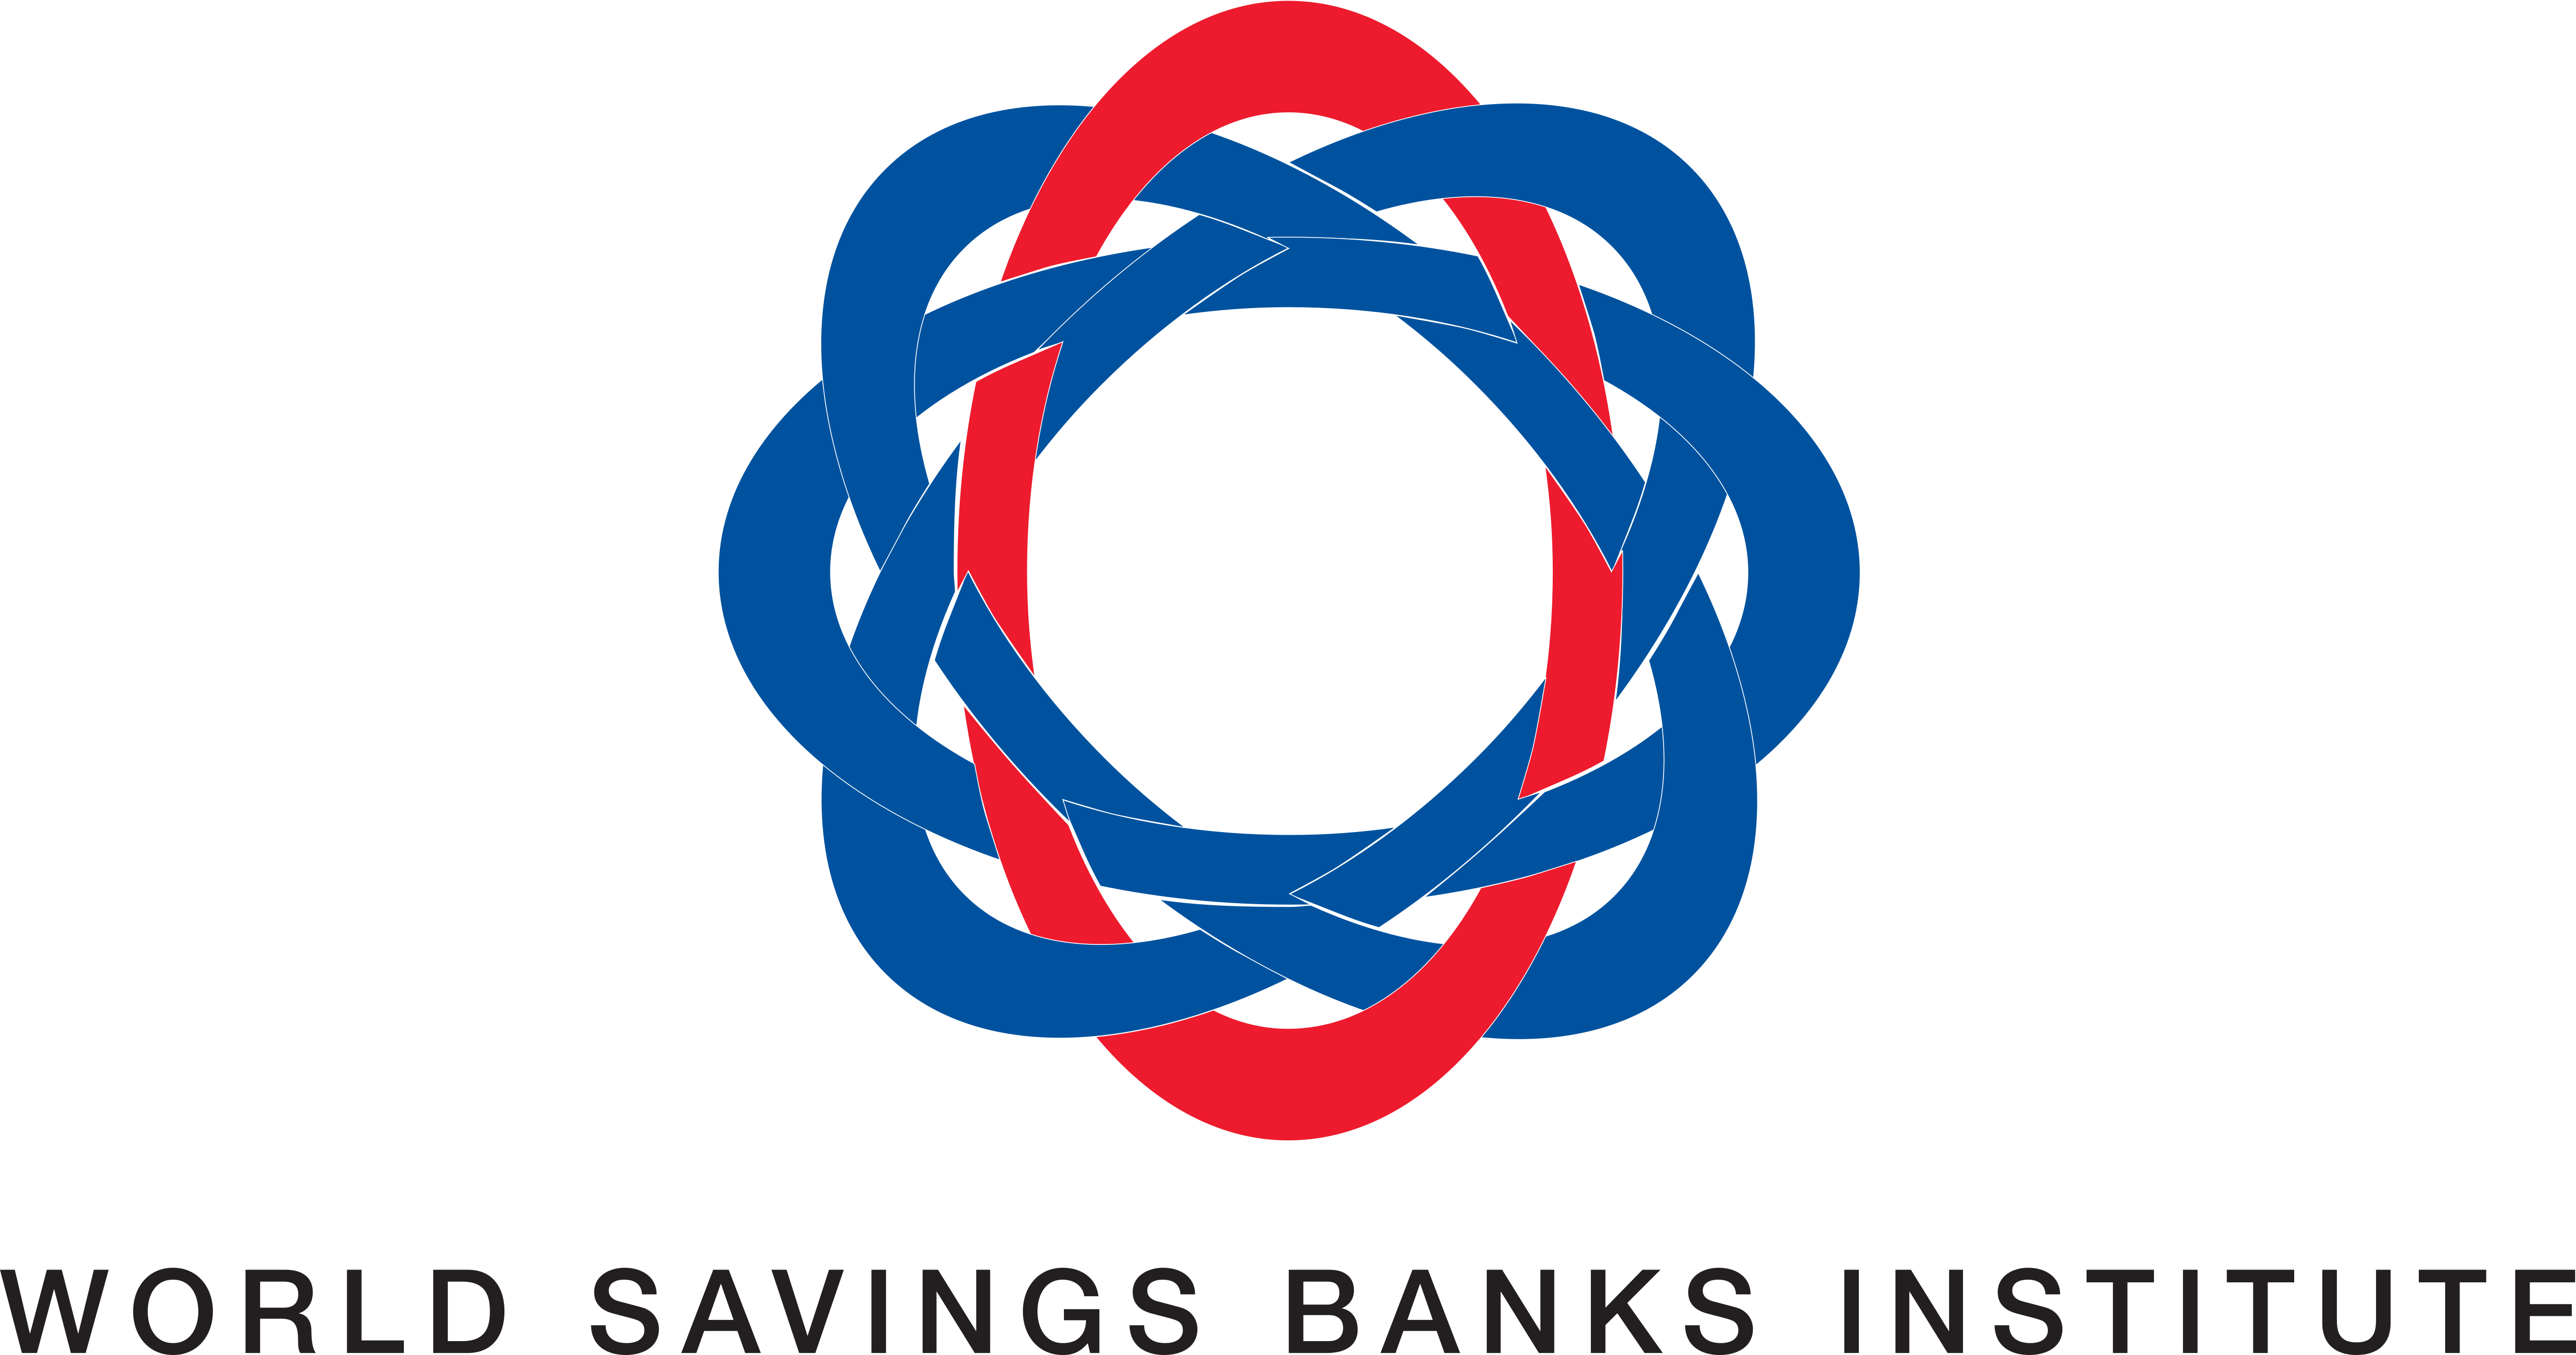 World Savings Banks Institute Logos Download